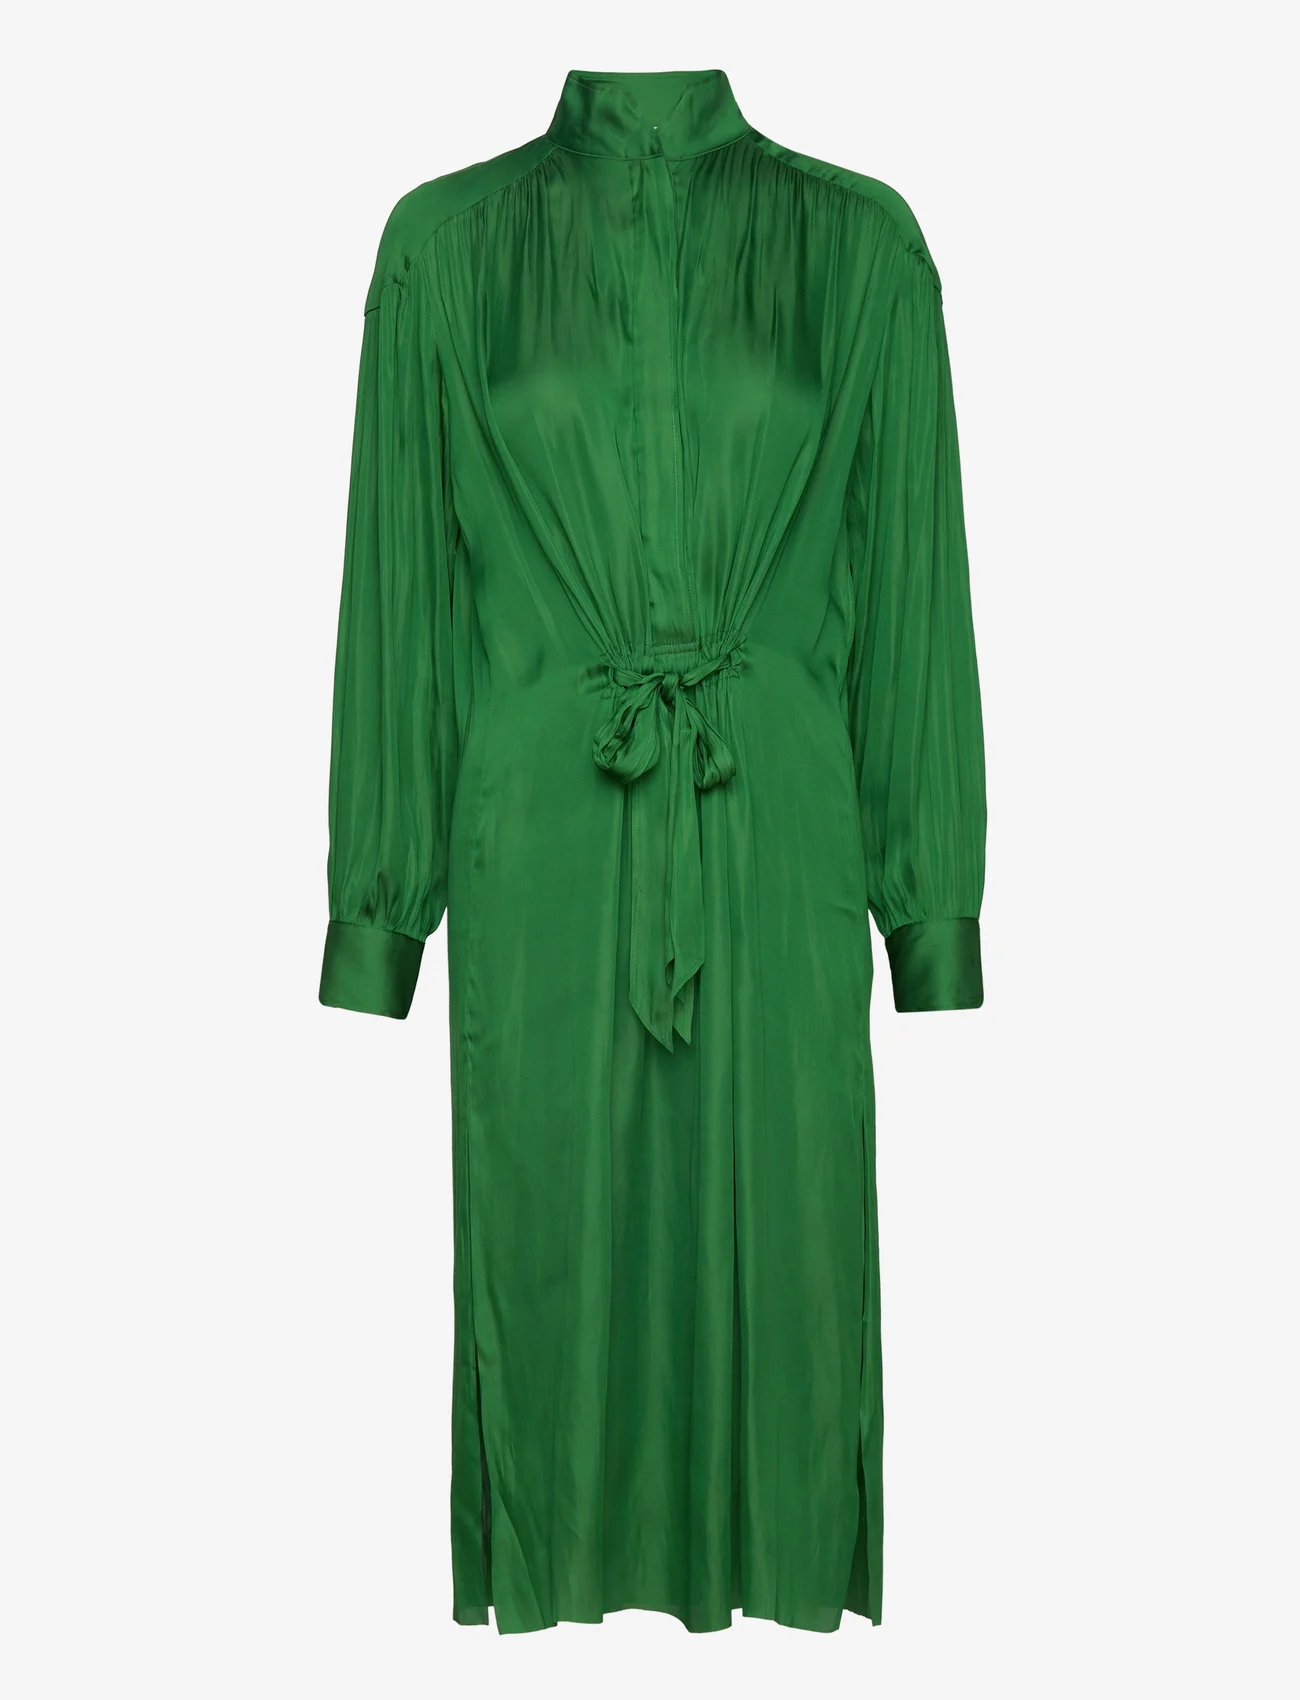 Day Birger et Mikkelsen - Camille - Modern Drape - shirt dresses - basil green - 0